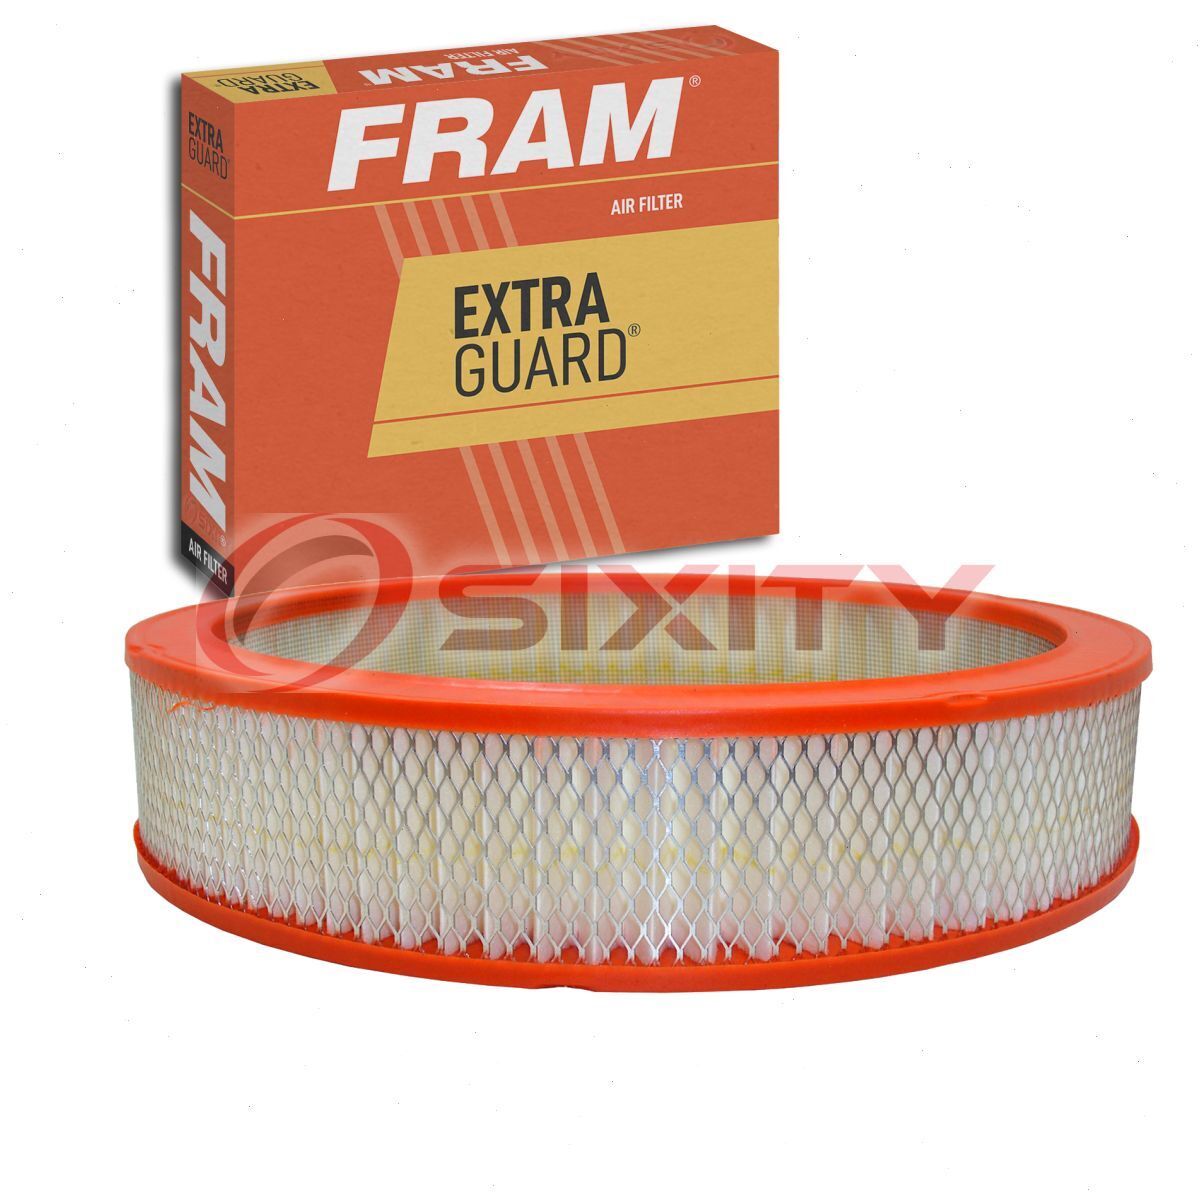 FRAM Extra Guard Air Filter for 1963-1970 Chevrolet Biscayne Intake Inlet jg